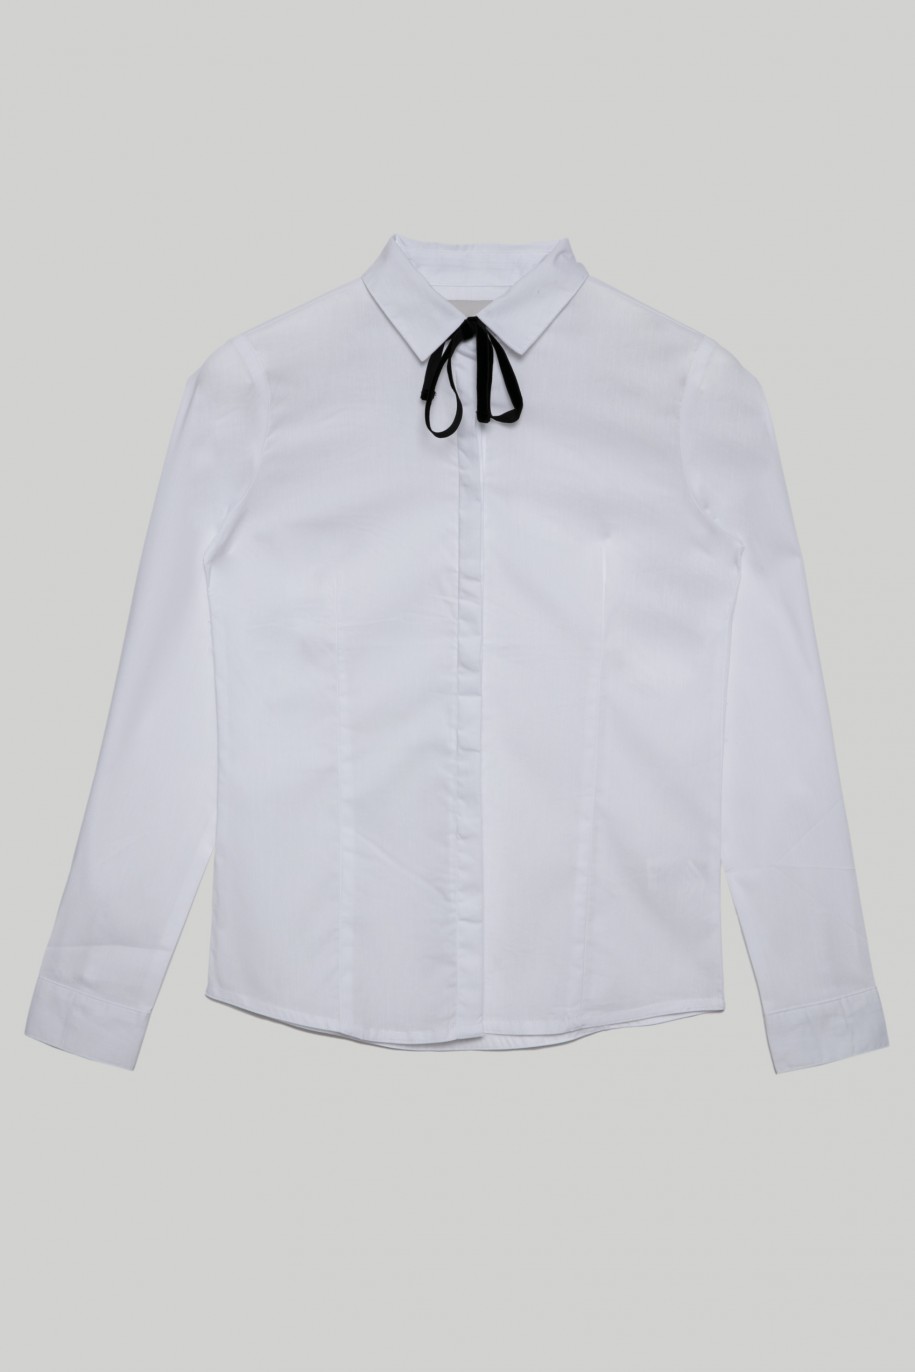 Biała elegancka koszula z ozdobną czarną tasiemką dla dziewczyny - 29415